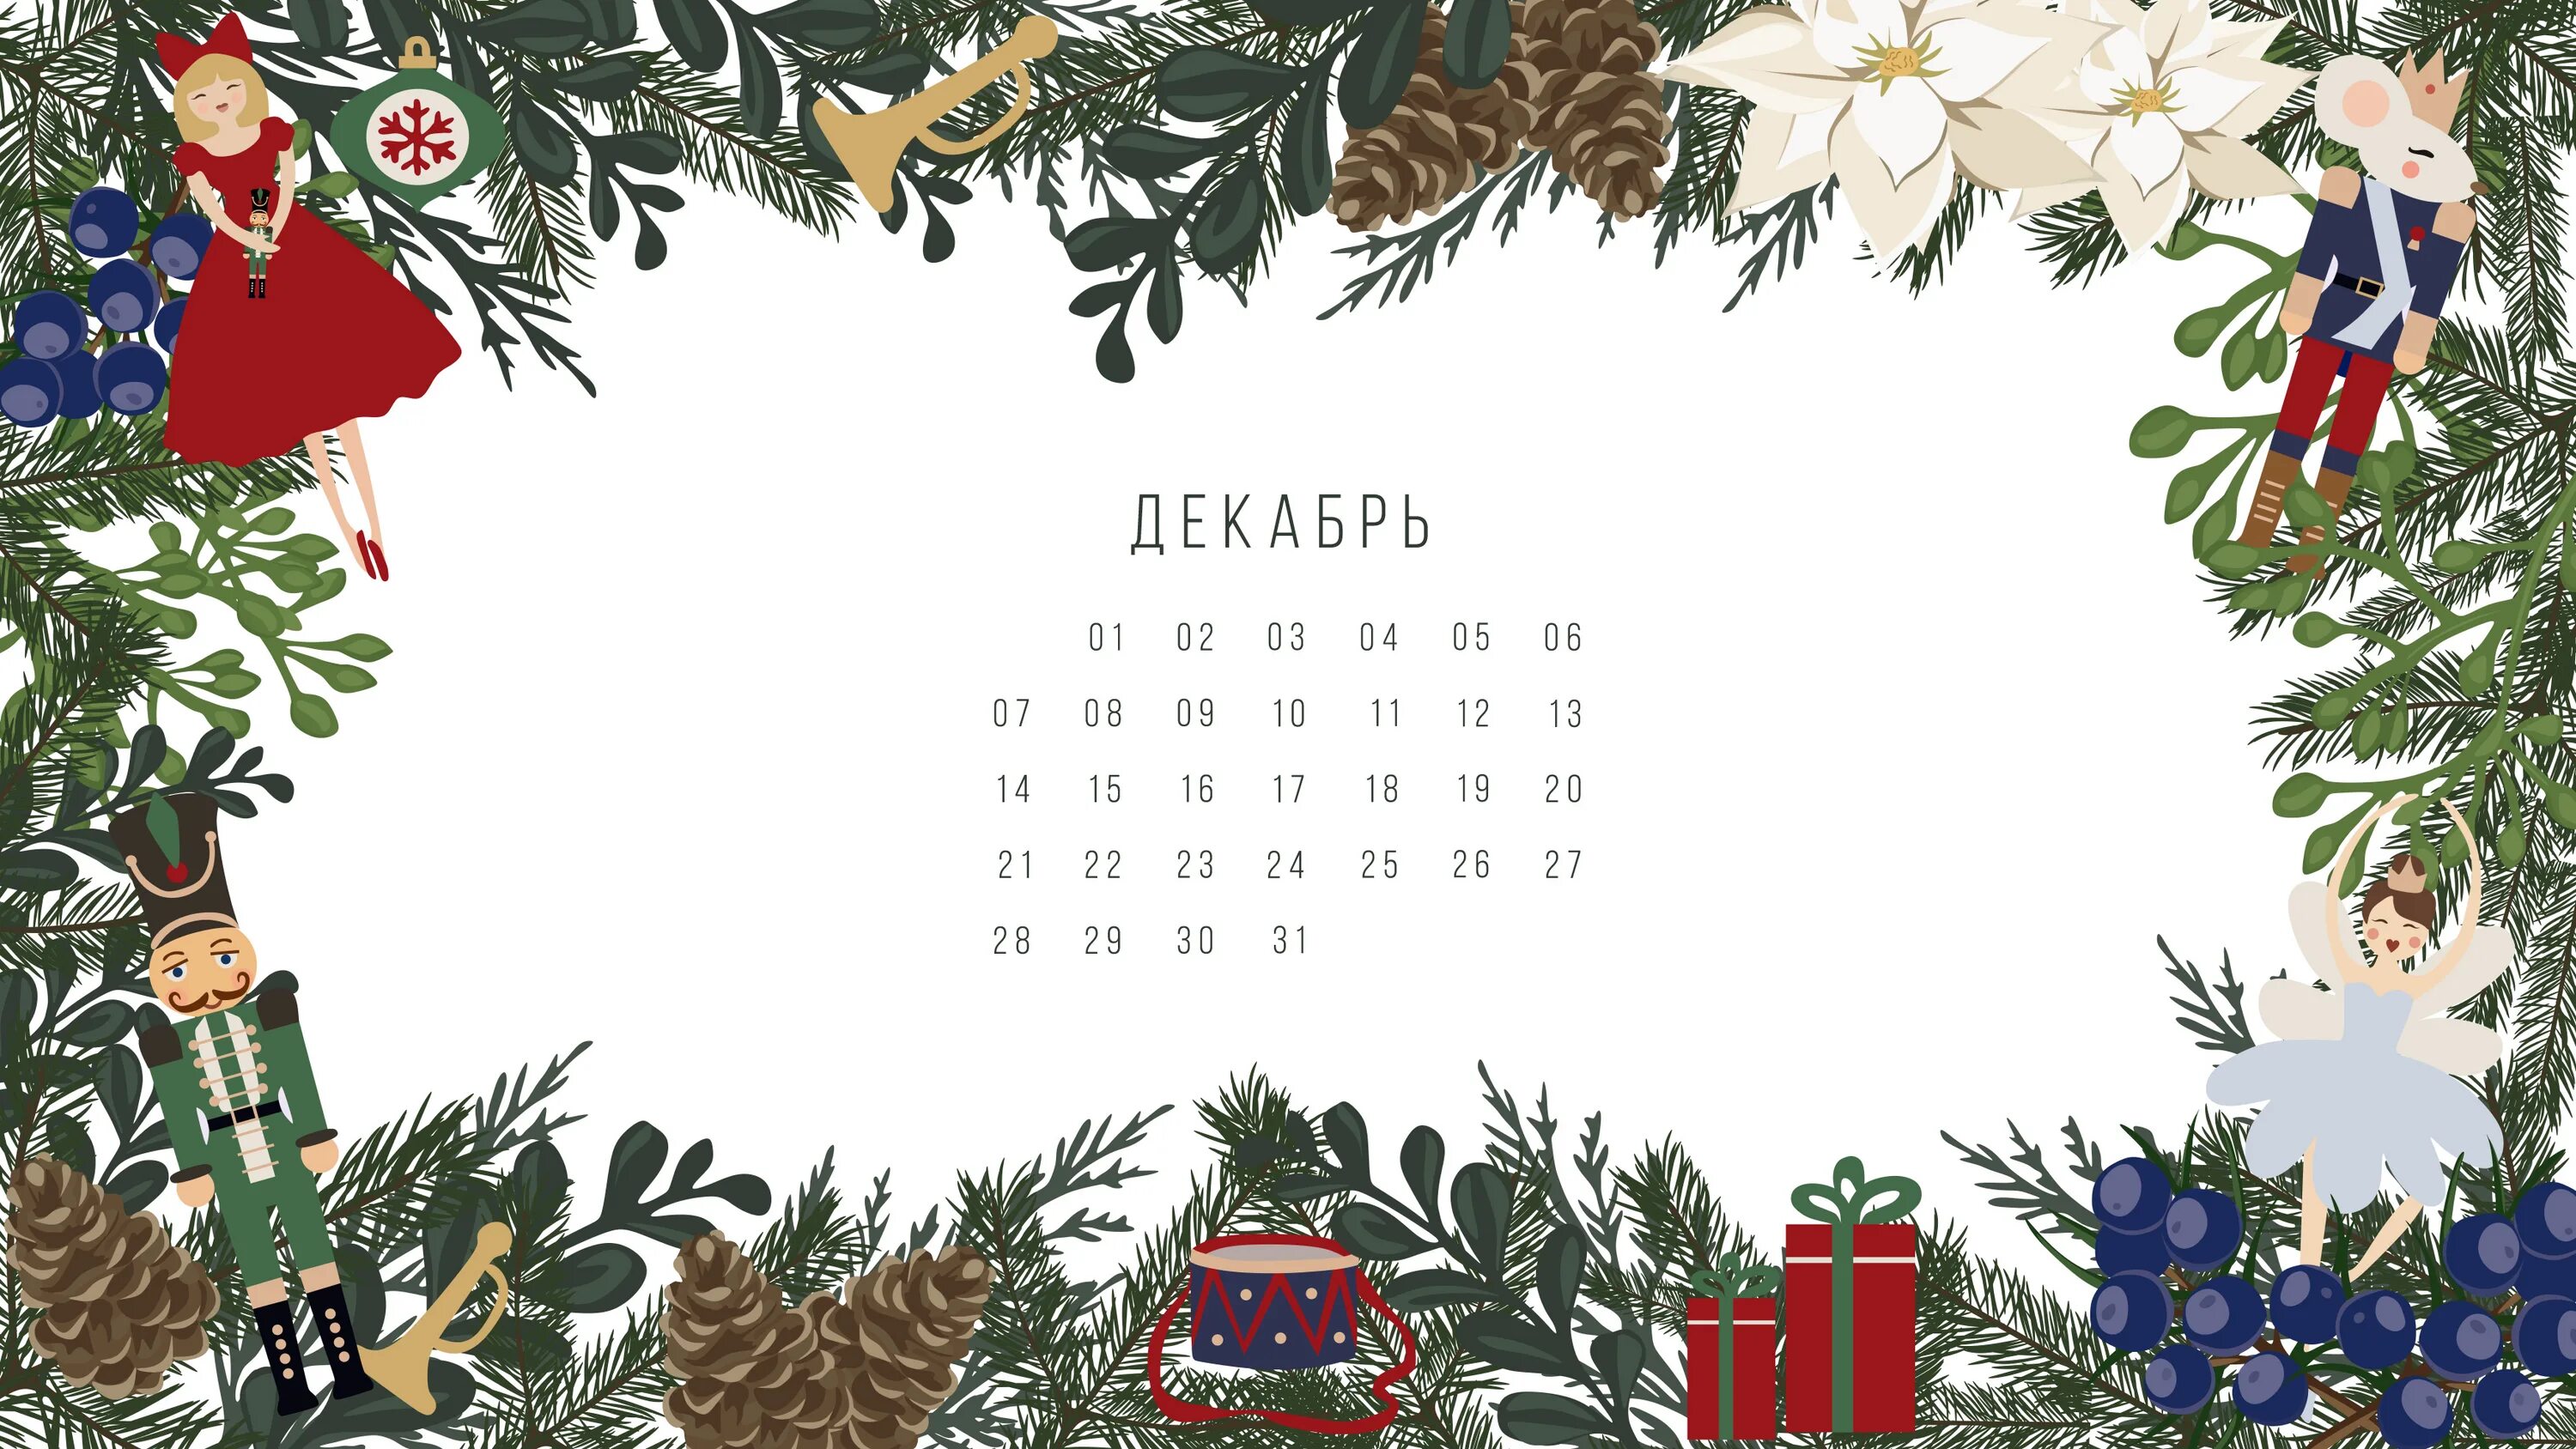 Календарь декабрь. Новогодний календарь на декабрь. Новогодние обои с календарем. Обои на рабочий стол календарь декабрь.